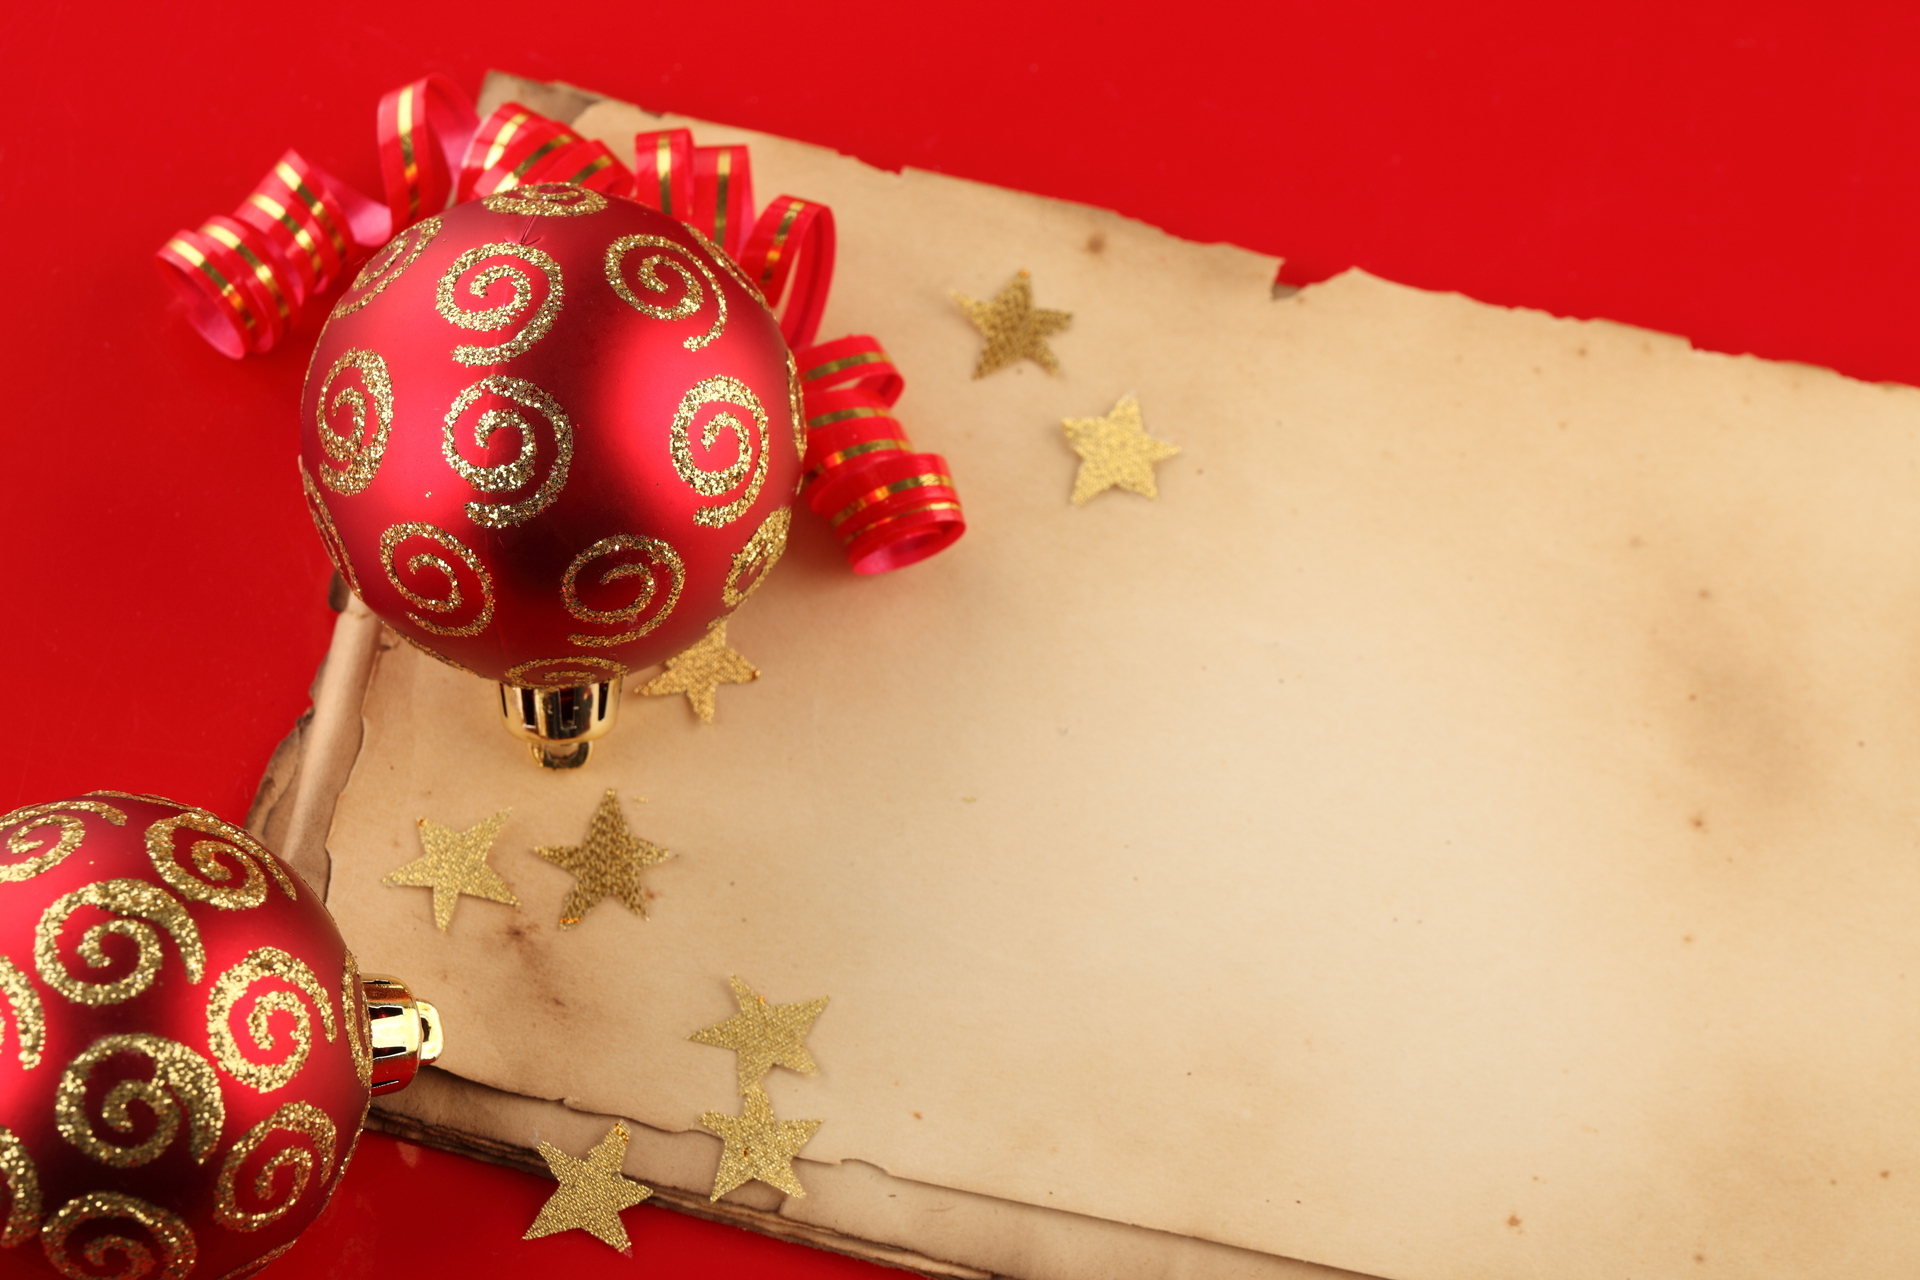 Скачать обои бесплатно Новый Год (New Year), Праздники, Рождество (Christmas Xmas) картинка на рабочий стол ПК